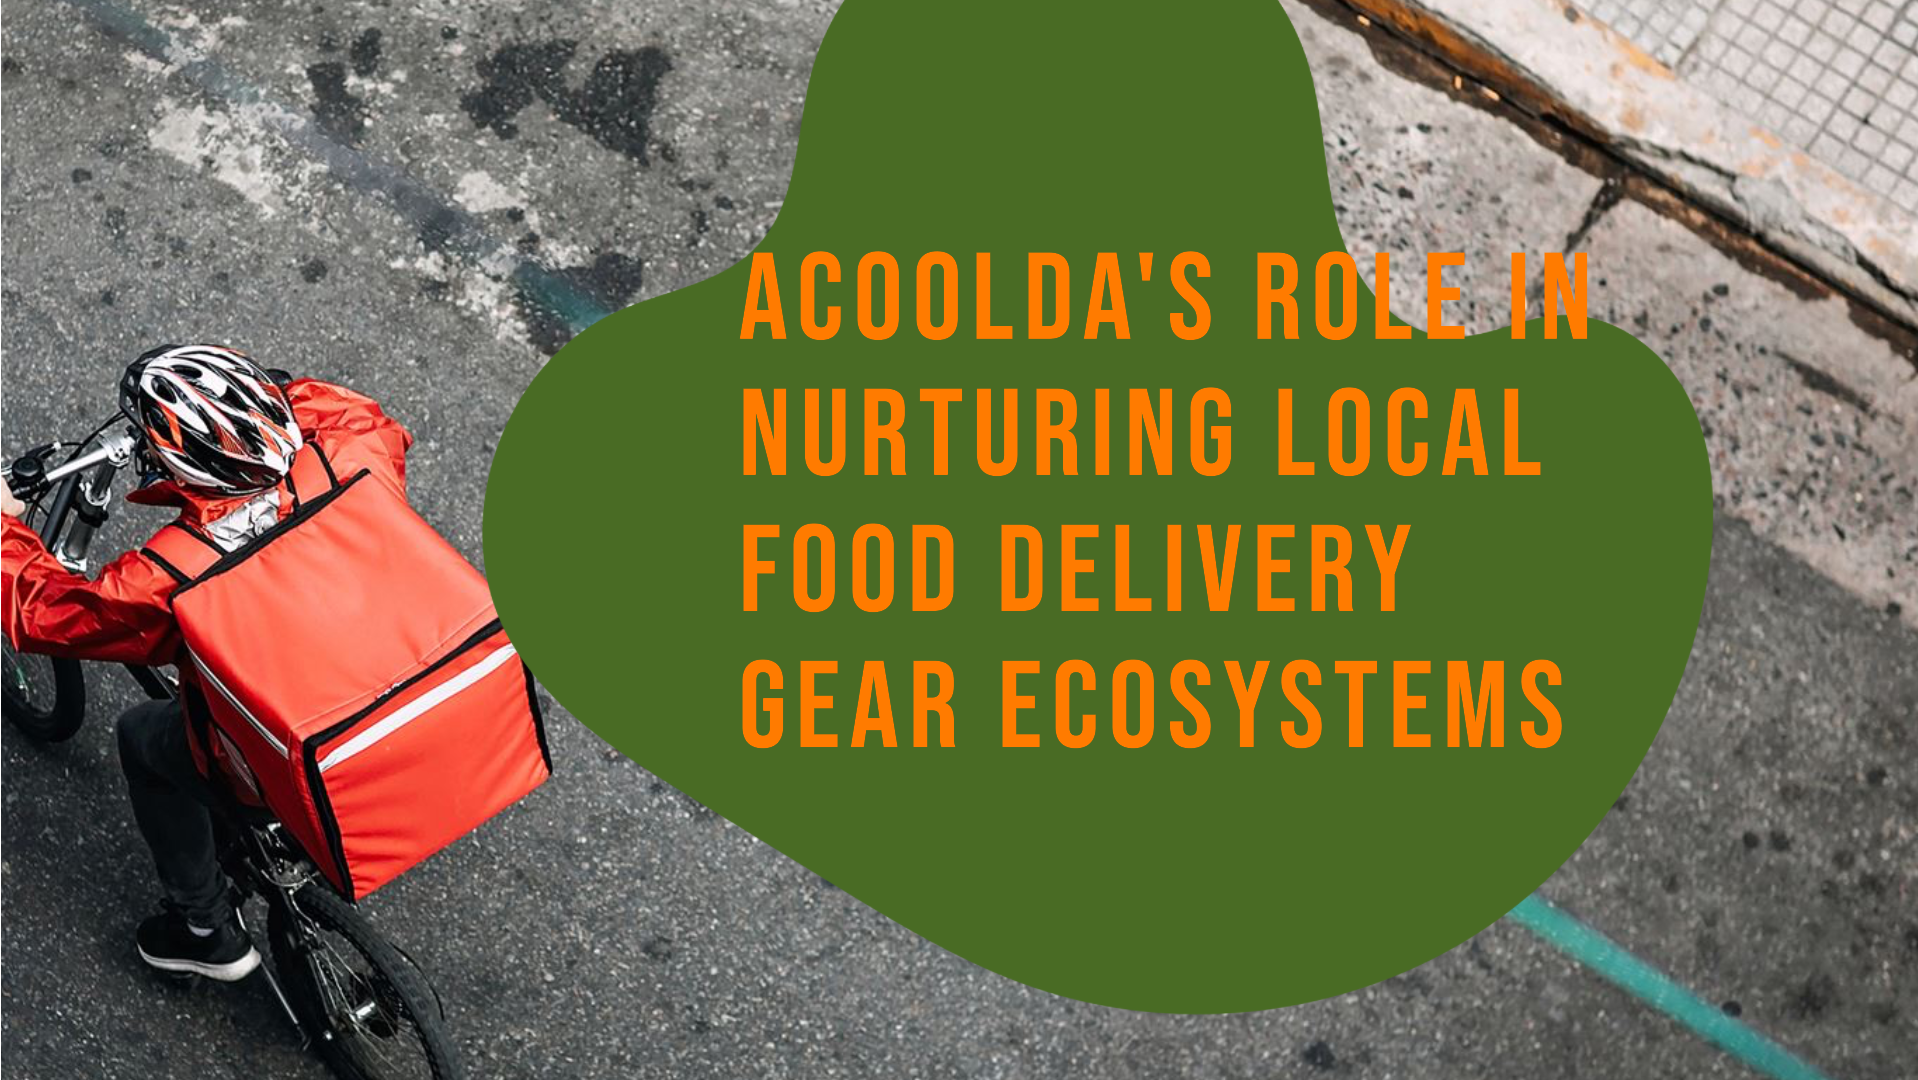 Le rôle de l'ACOOLDA dans la promotion des écosystèmes locaux d'équipement de livraison de nourriture